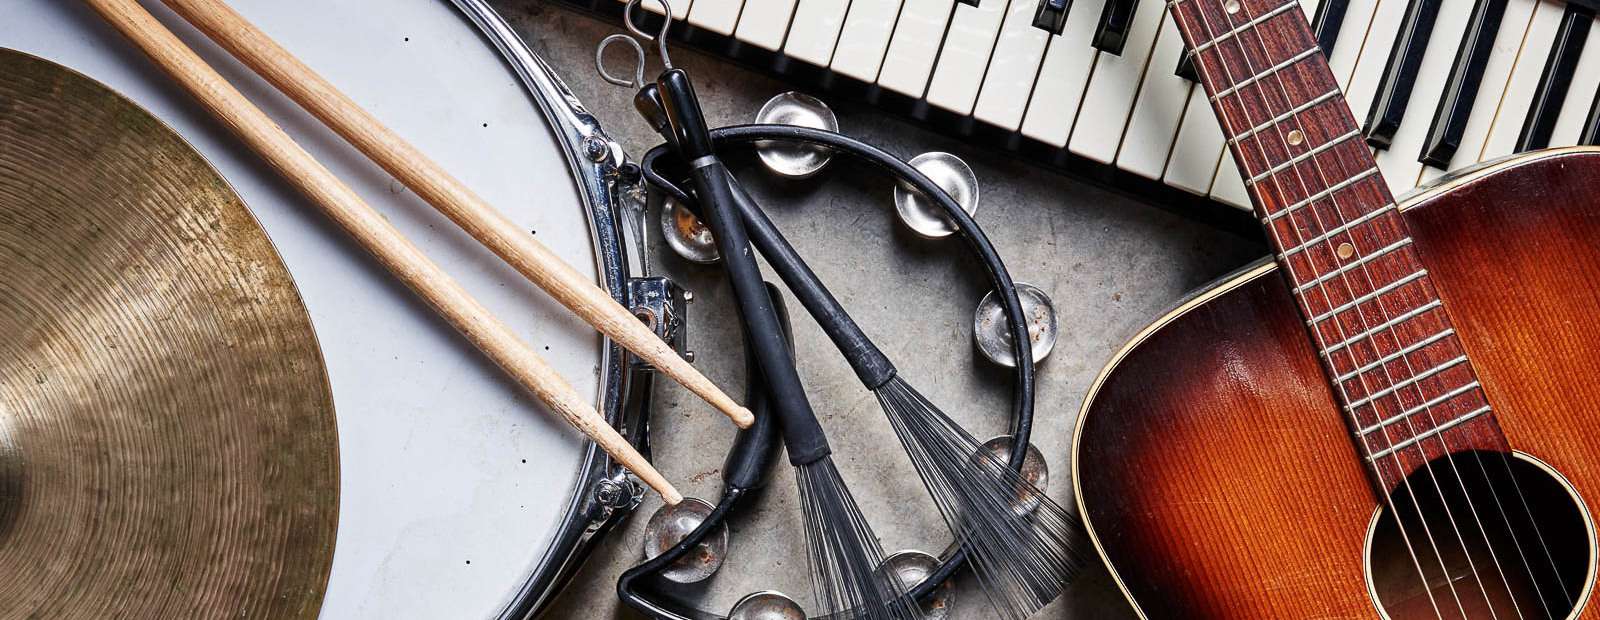 GarageBand пропонує великий вибір музичних інструментів